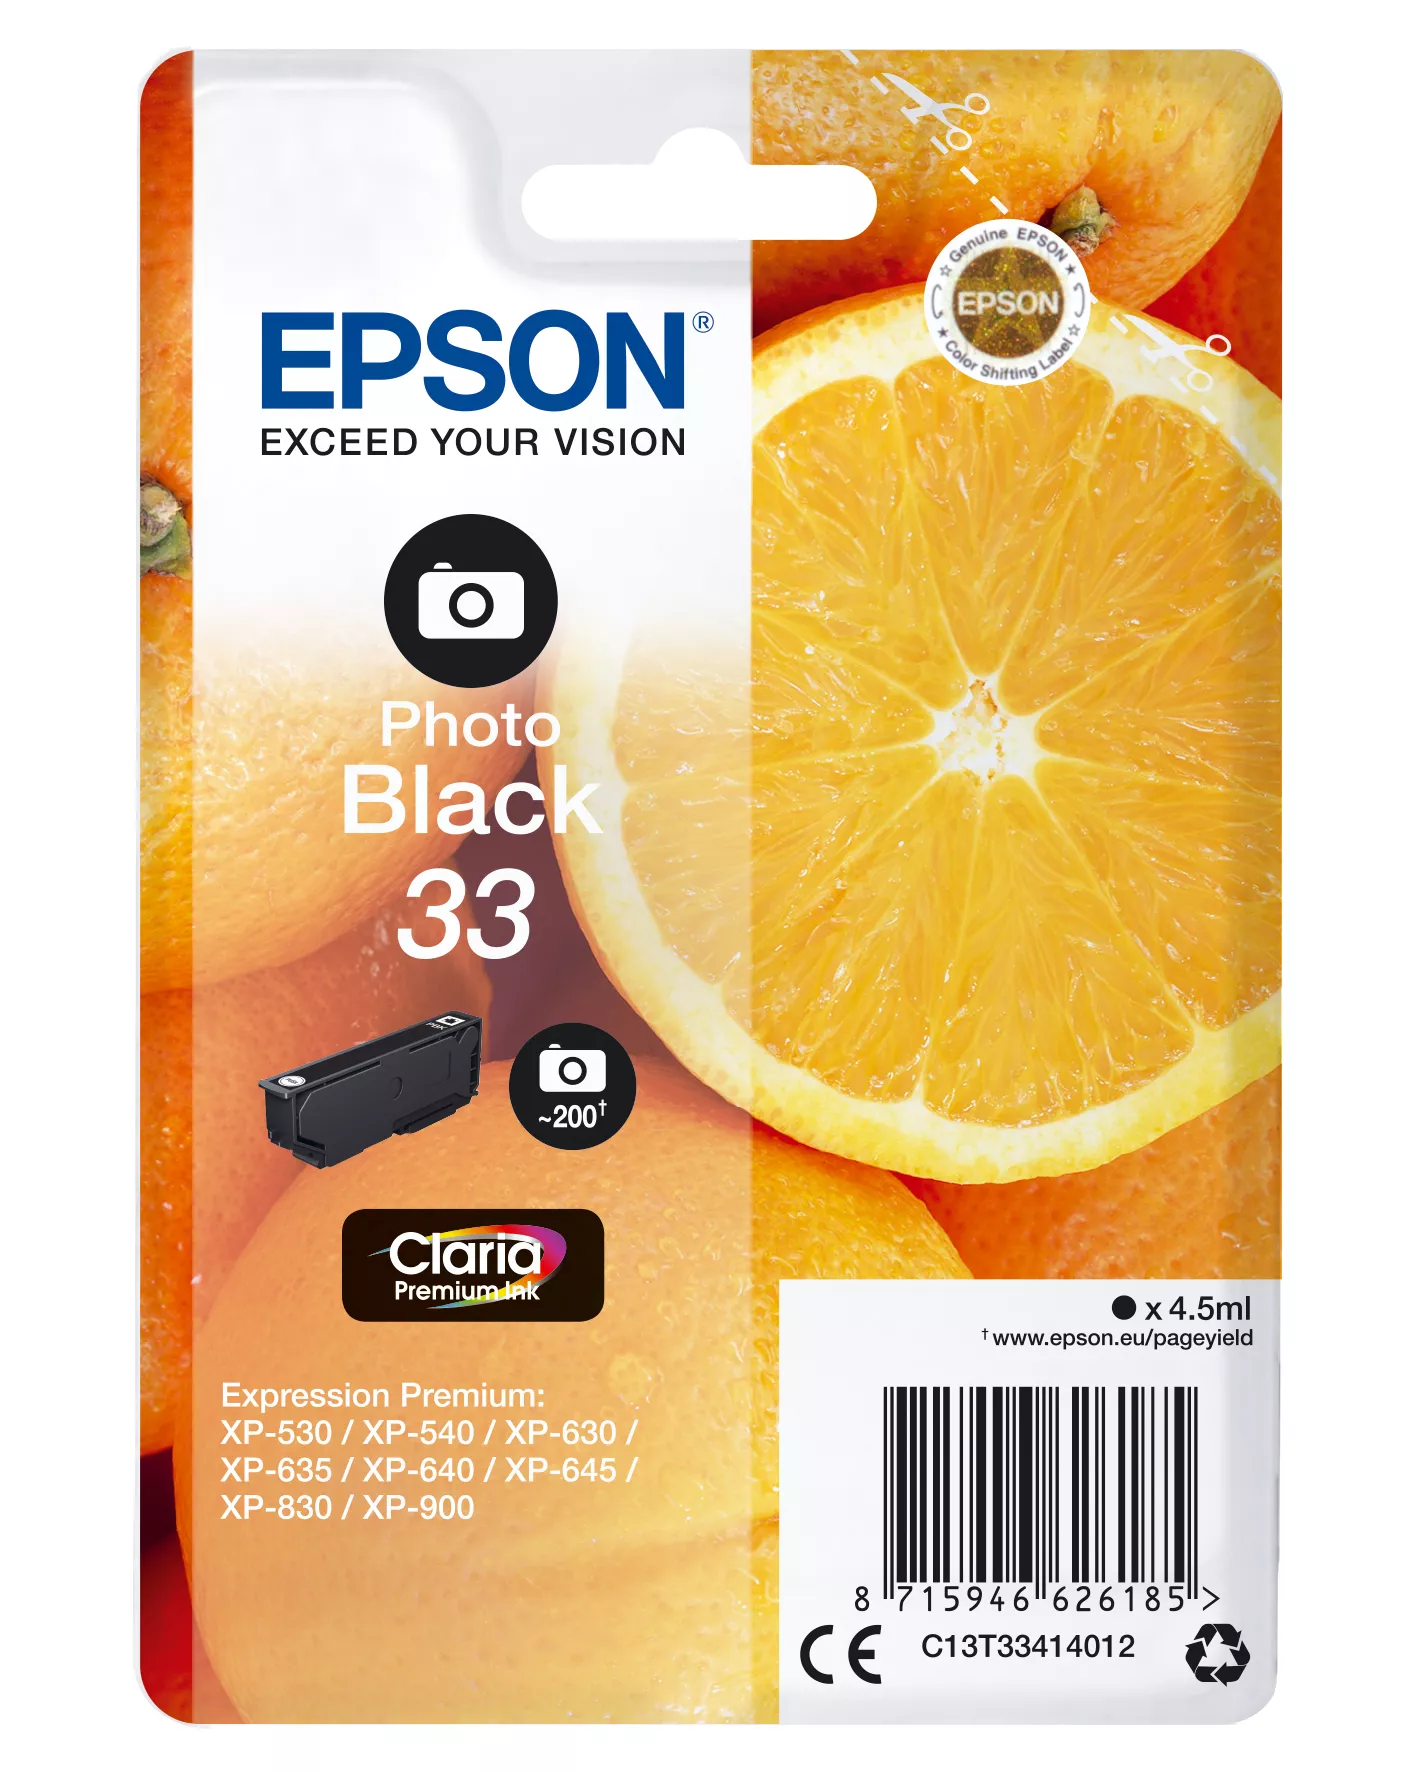 Achat EPSON Cartouche Oranges Encre Claria Premium Noir Photo au meilleur prix